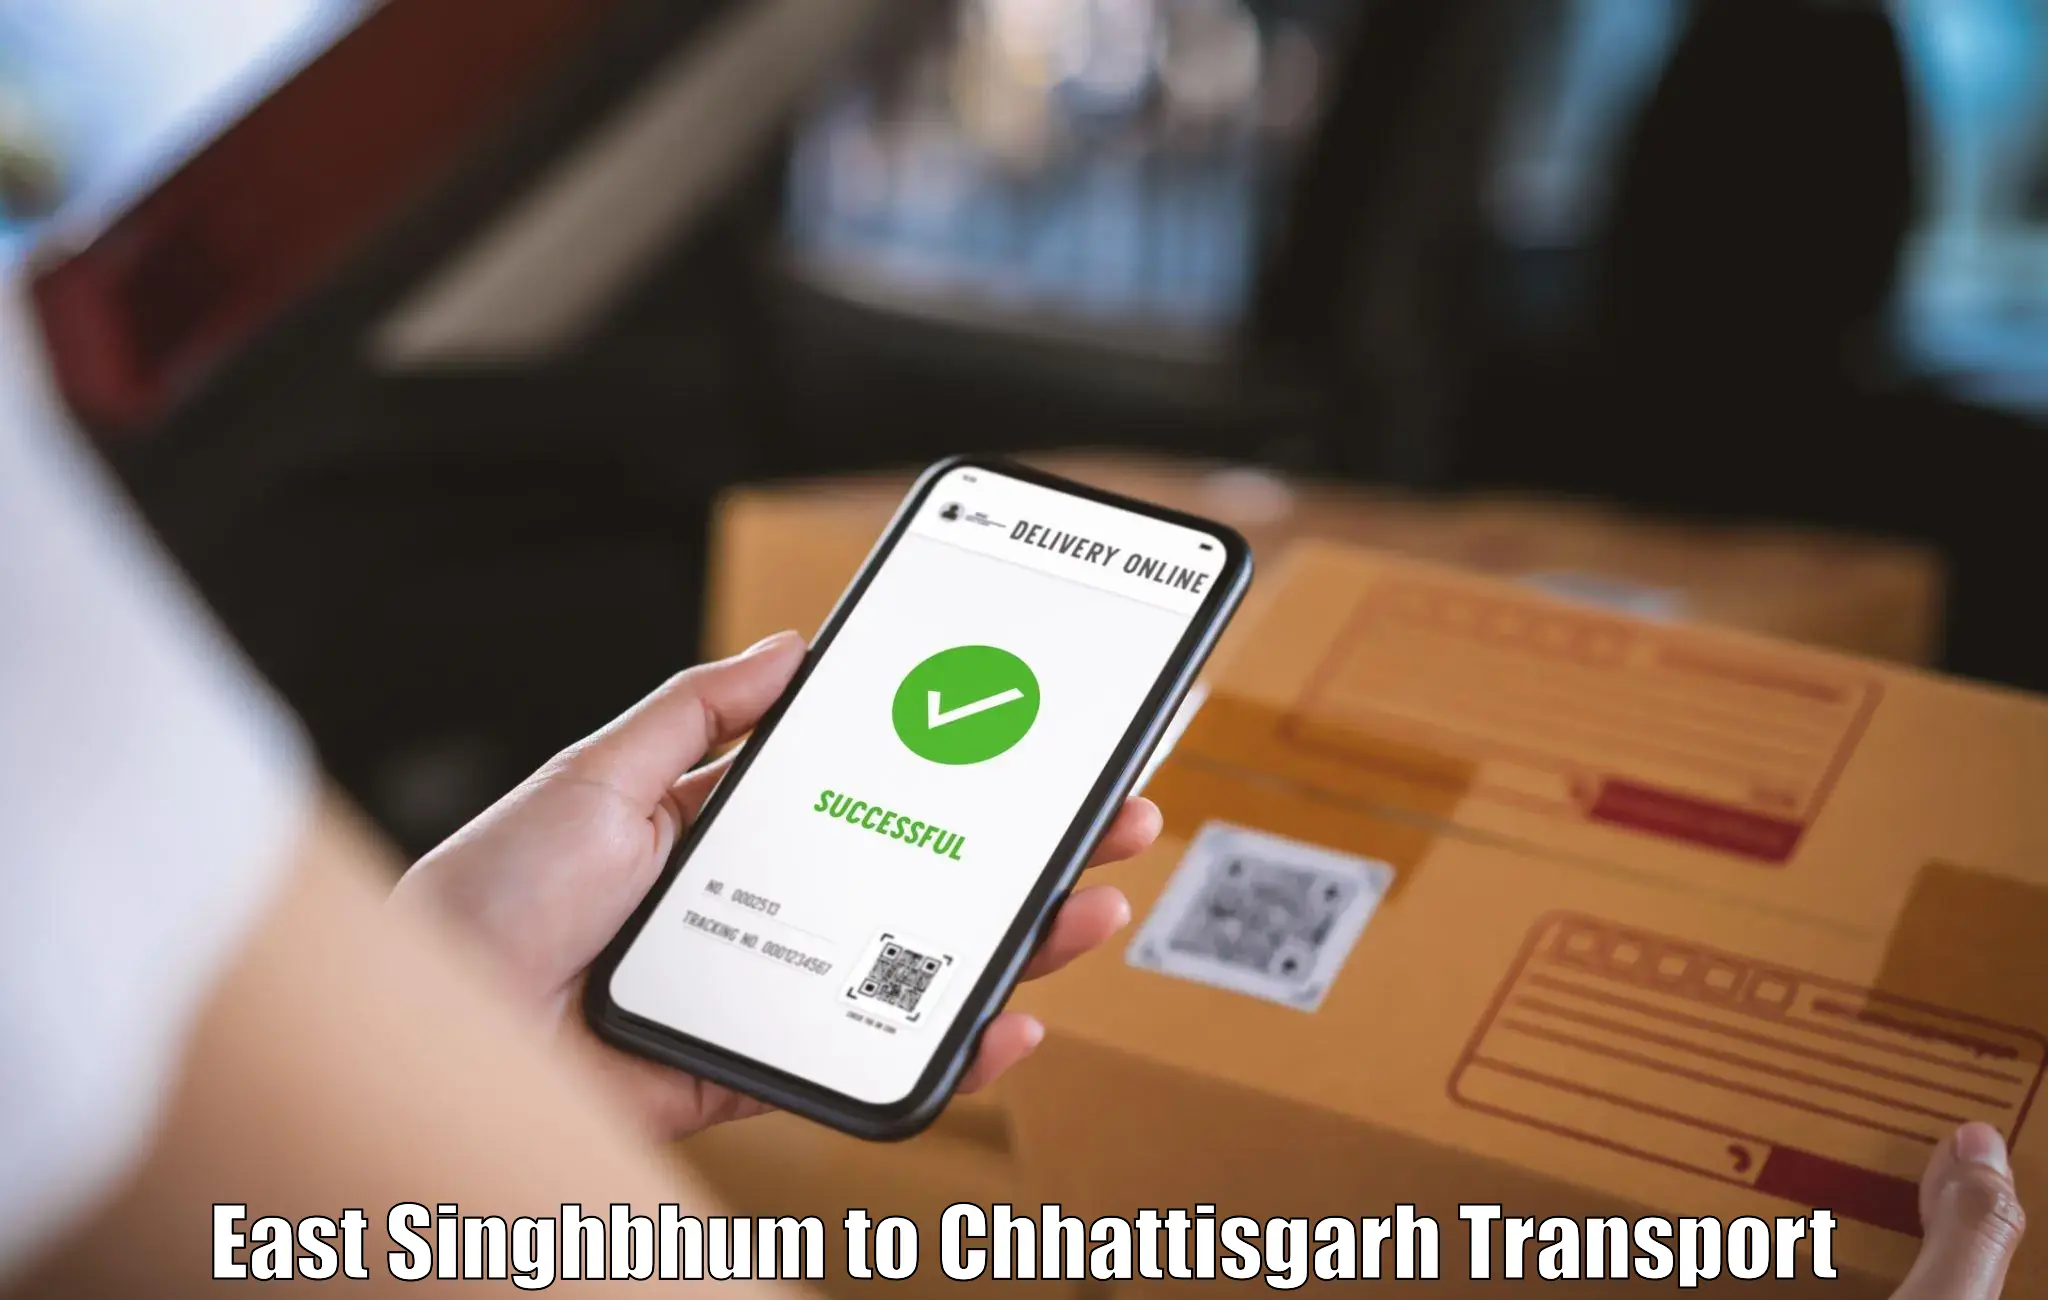 Online transport service East Singhbhum to Ramanujganj